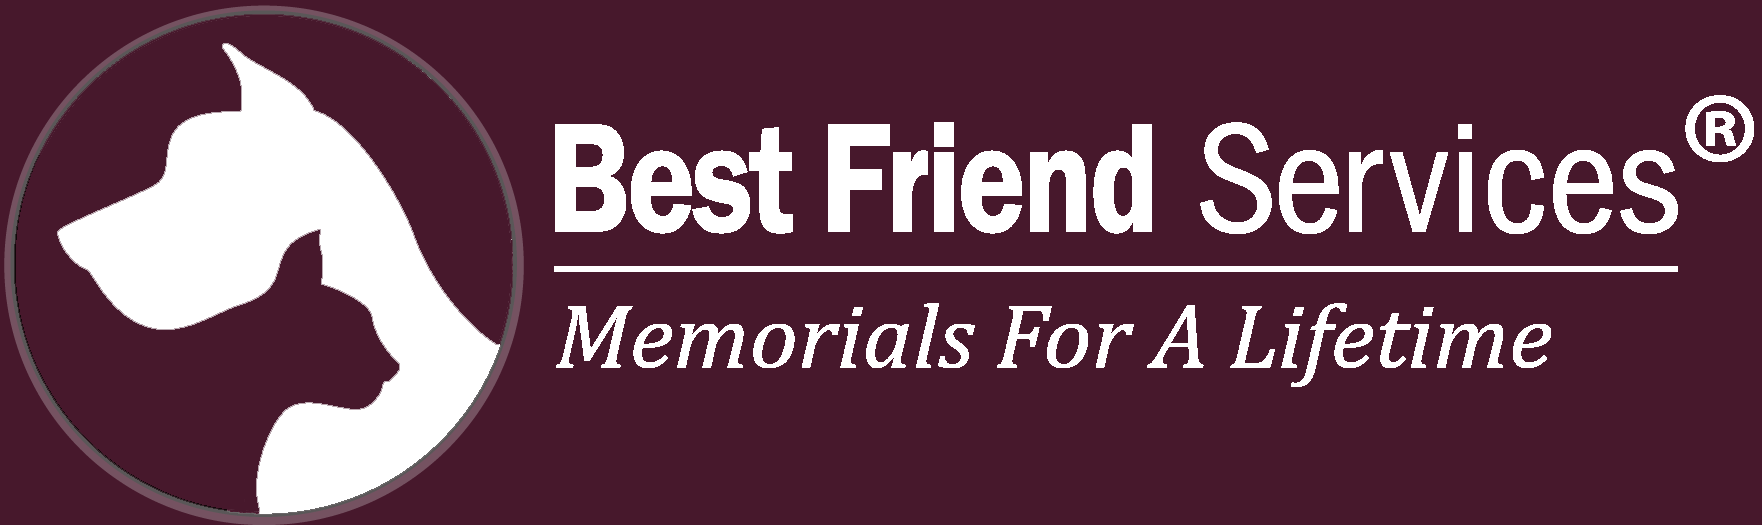 Best Friend Service